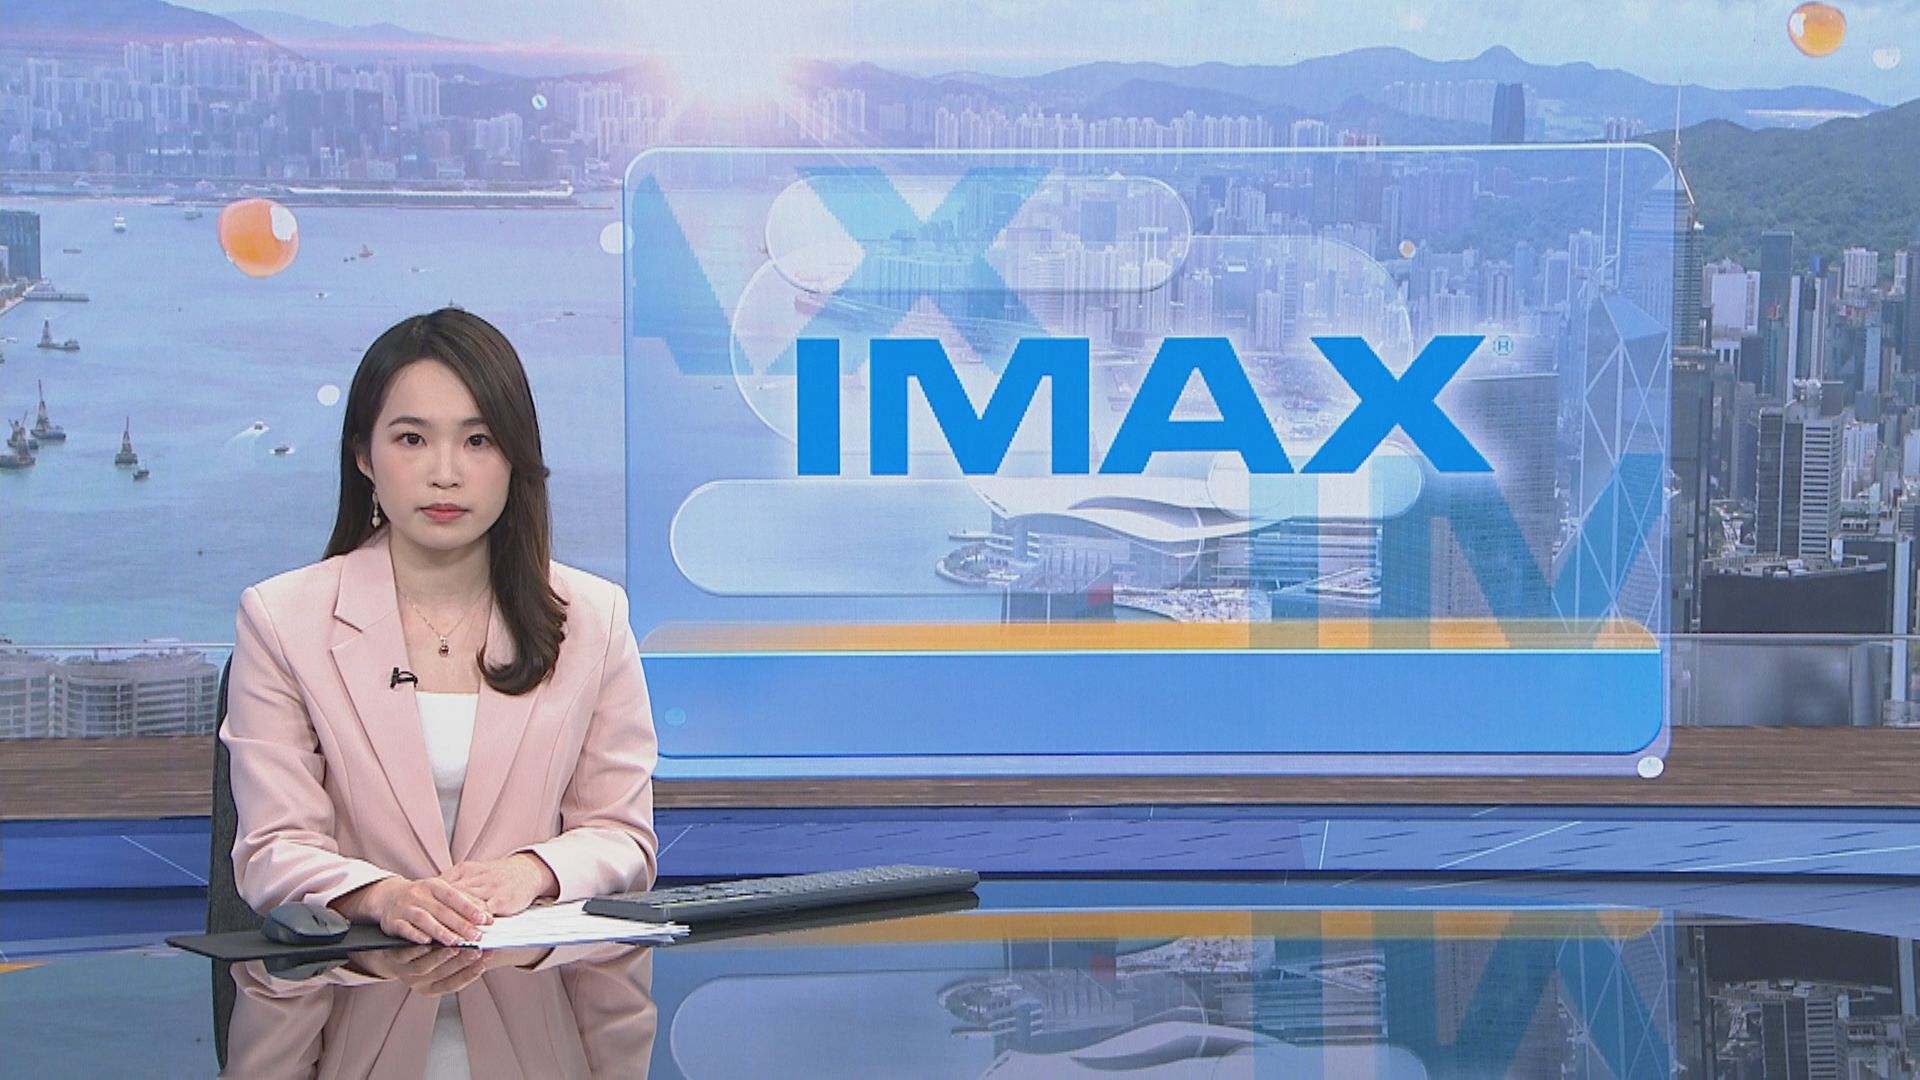 【影業股業績】IMAX中國去年多賺逾1.5倍 疫情影響或持續